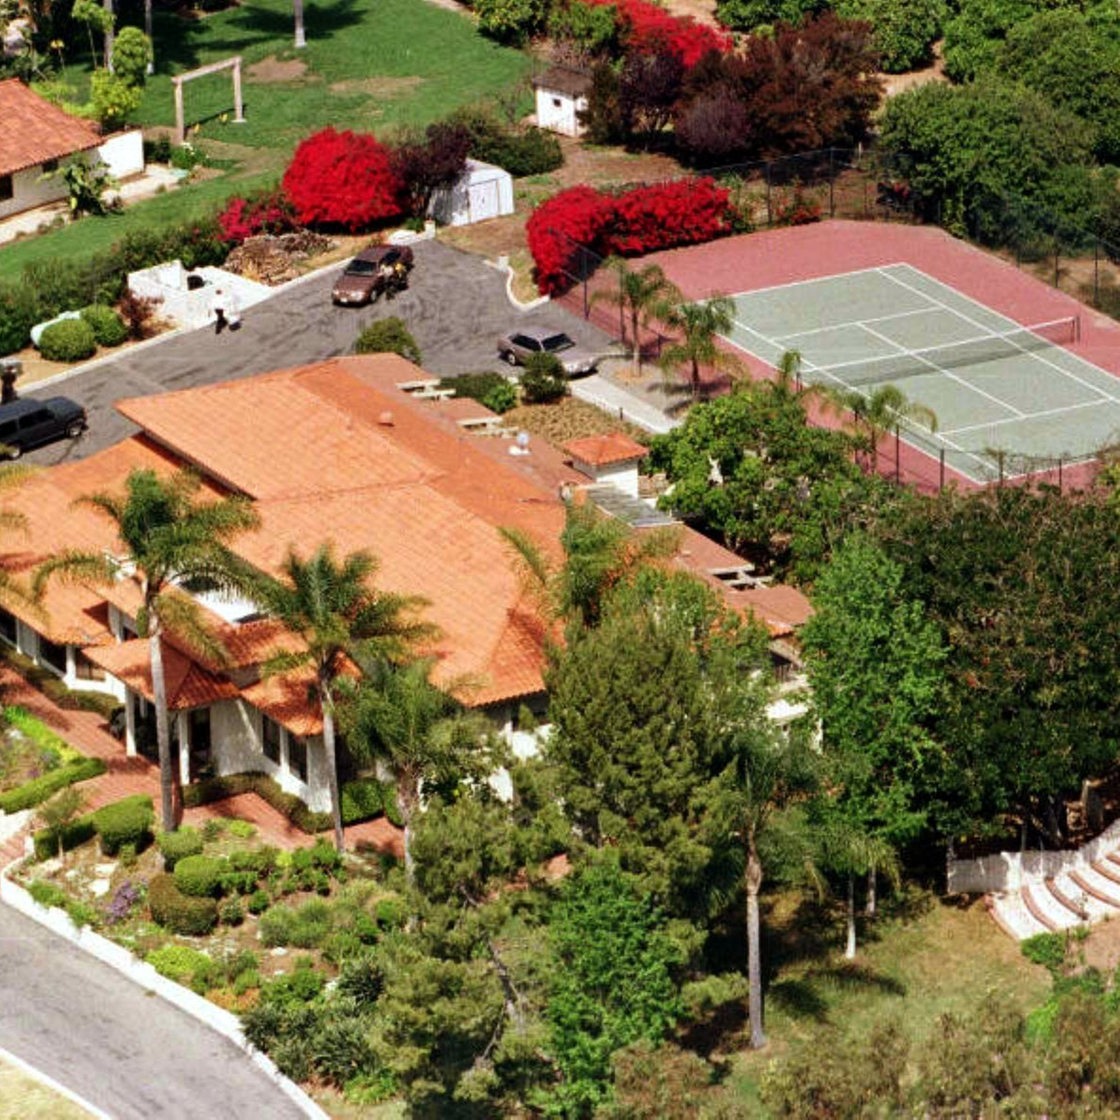 Blick auf das zwei Millionen teure Anwesen in Rancho Santa Fe bei San Diego, in dem am 27.3.1997 39 Menschen tot aufgefunden worden sind, die vermutlich einen Massenselbstmord verübt haben.